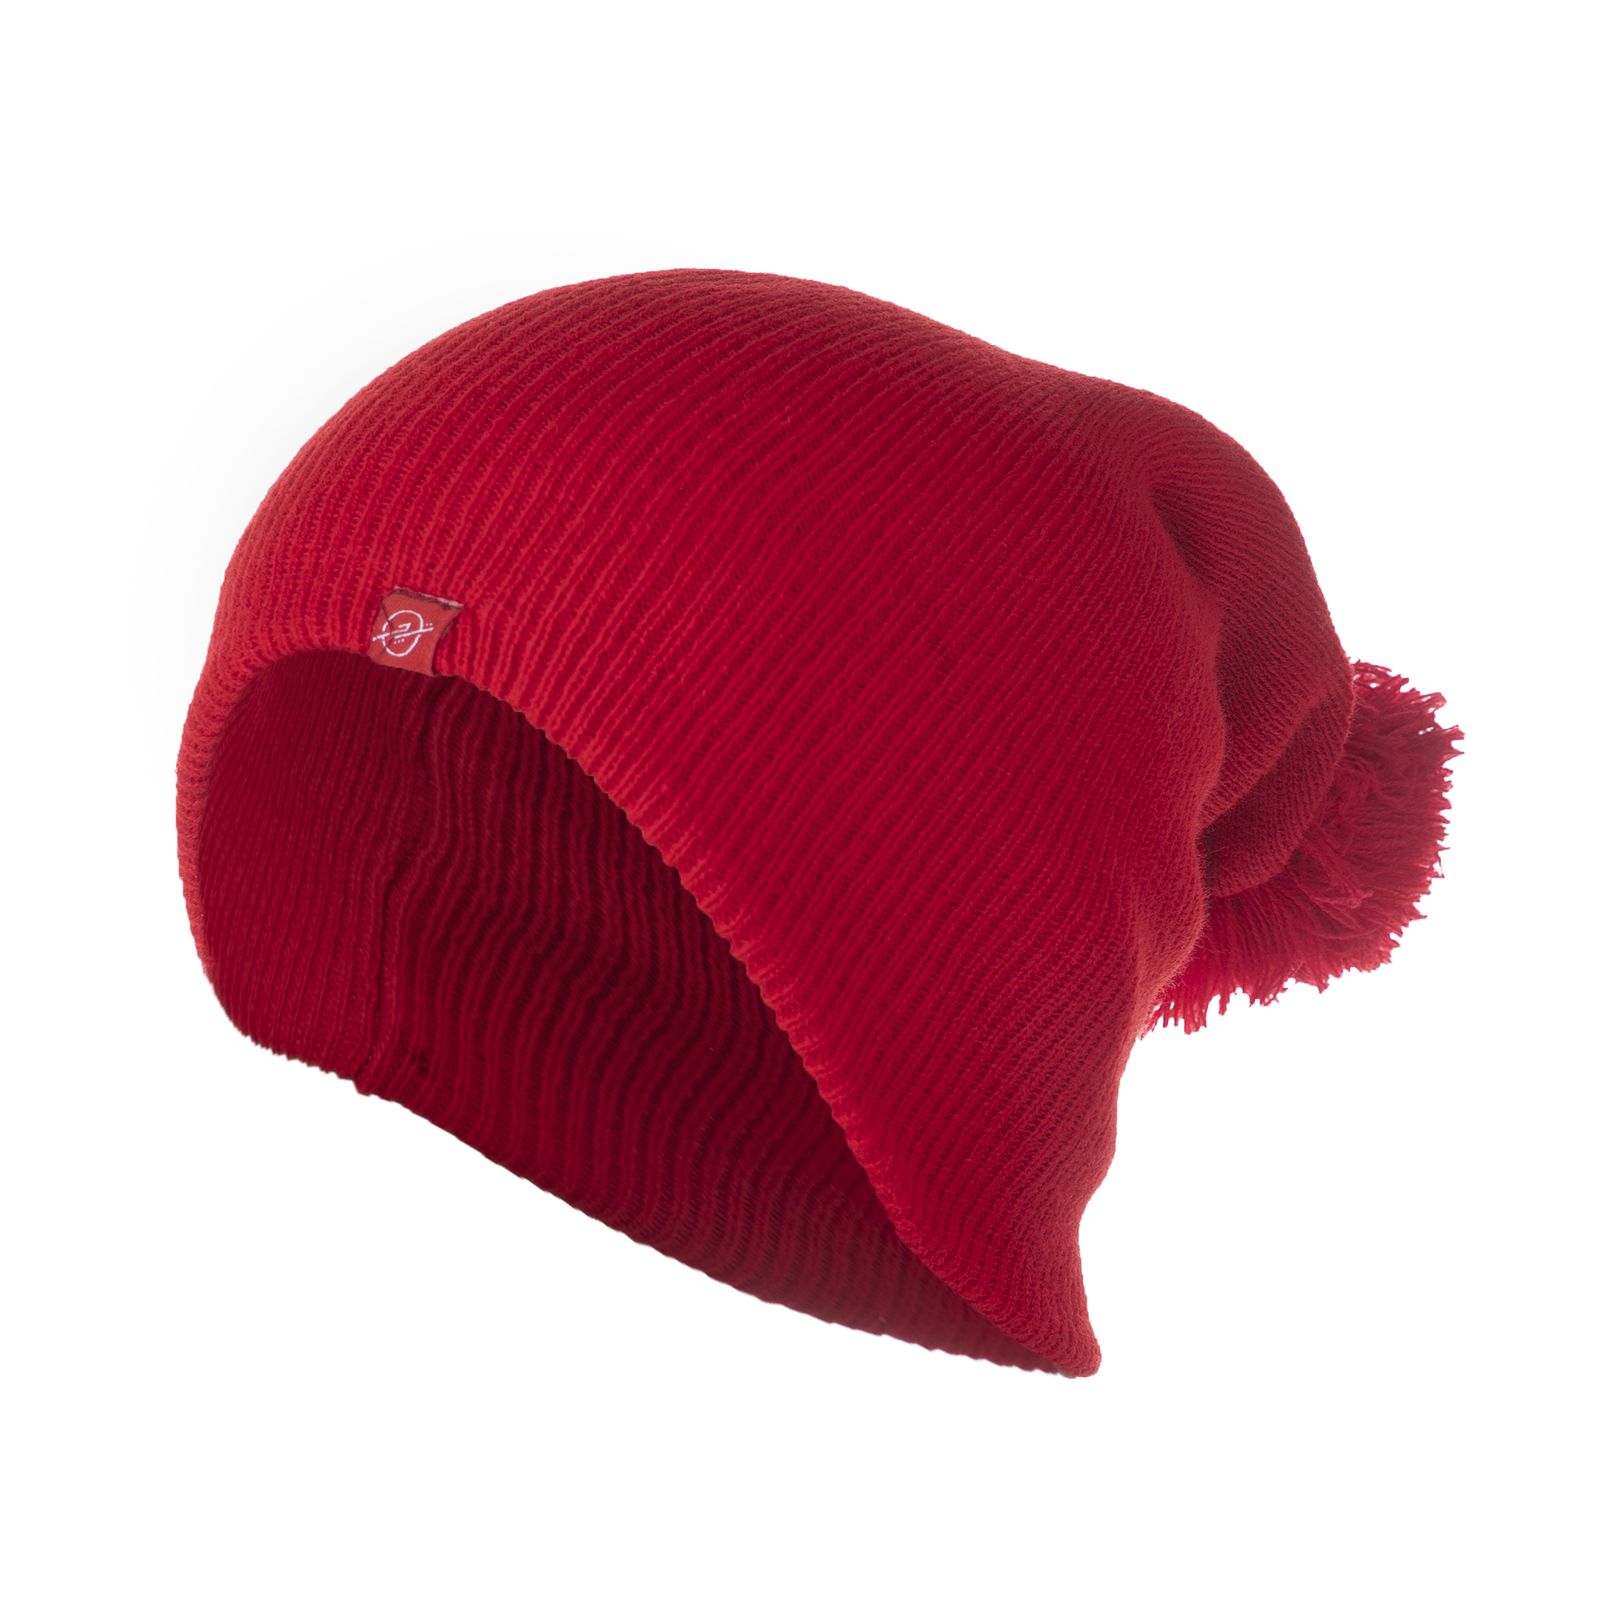 کلاه تچر مدل 2013116 - قرمز - 1